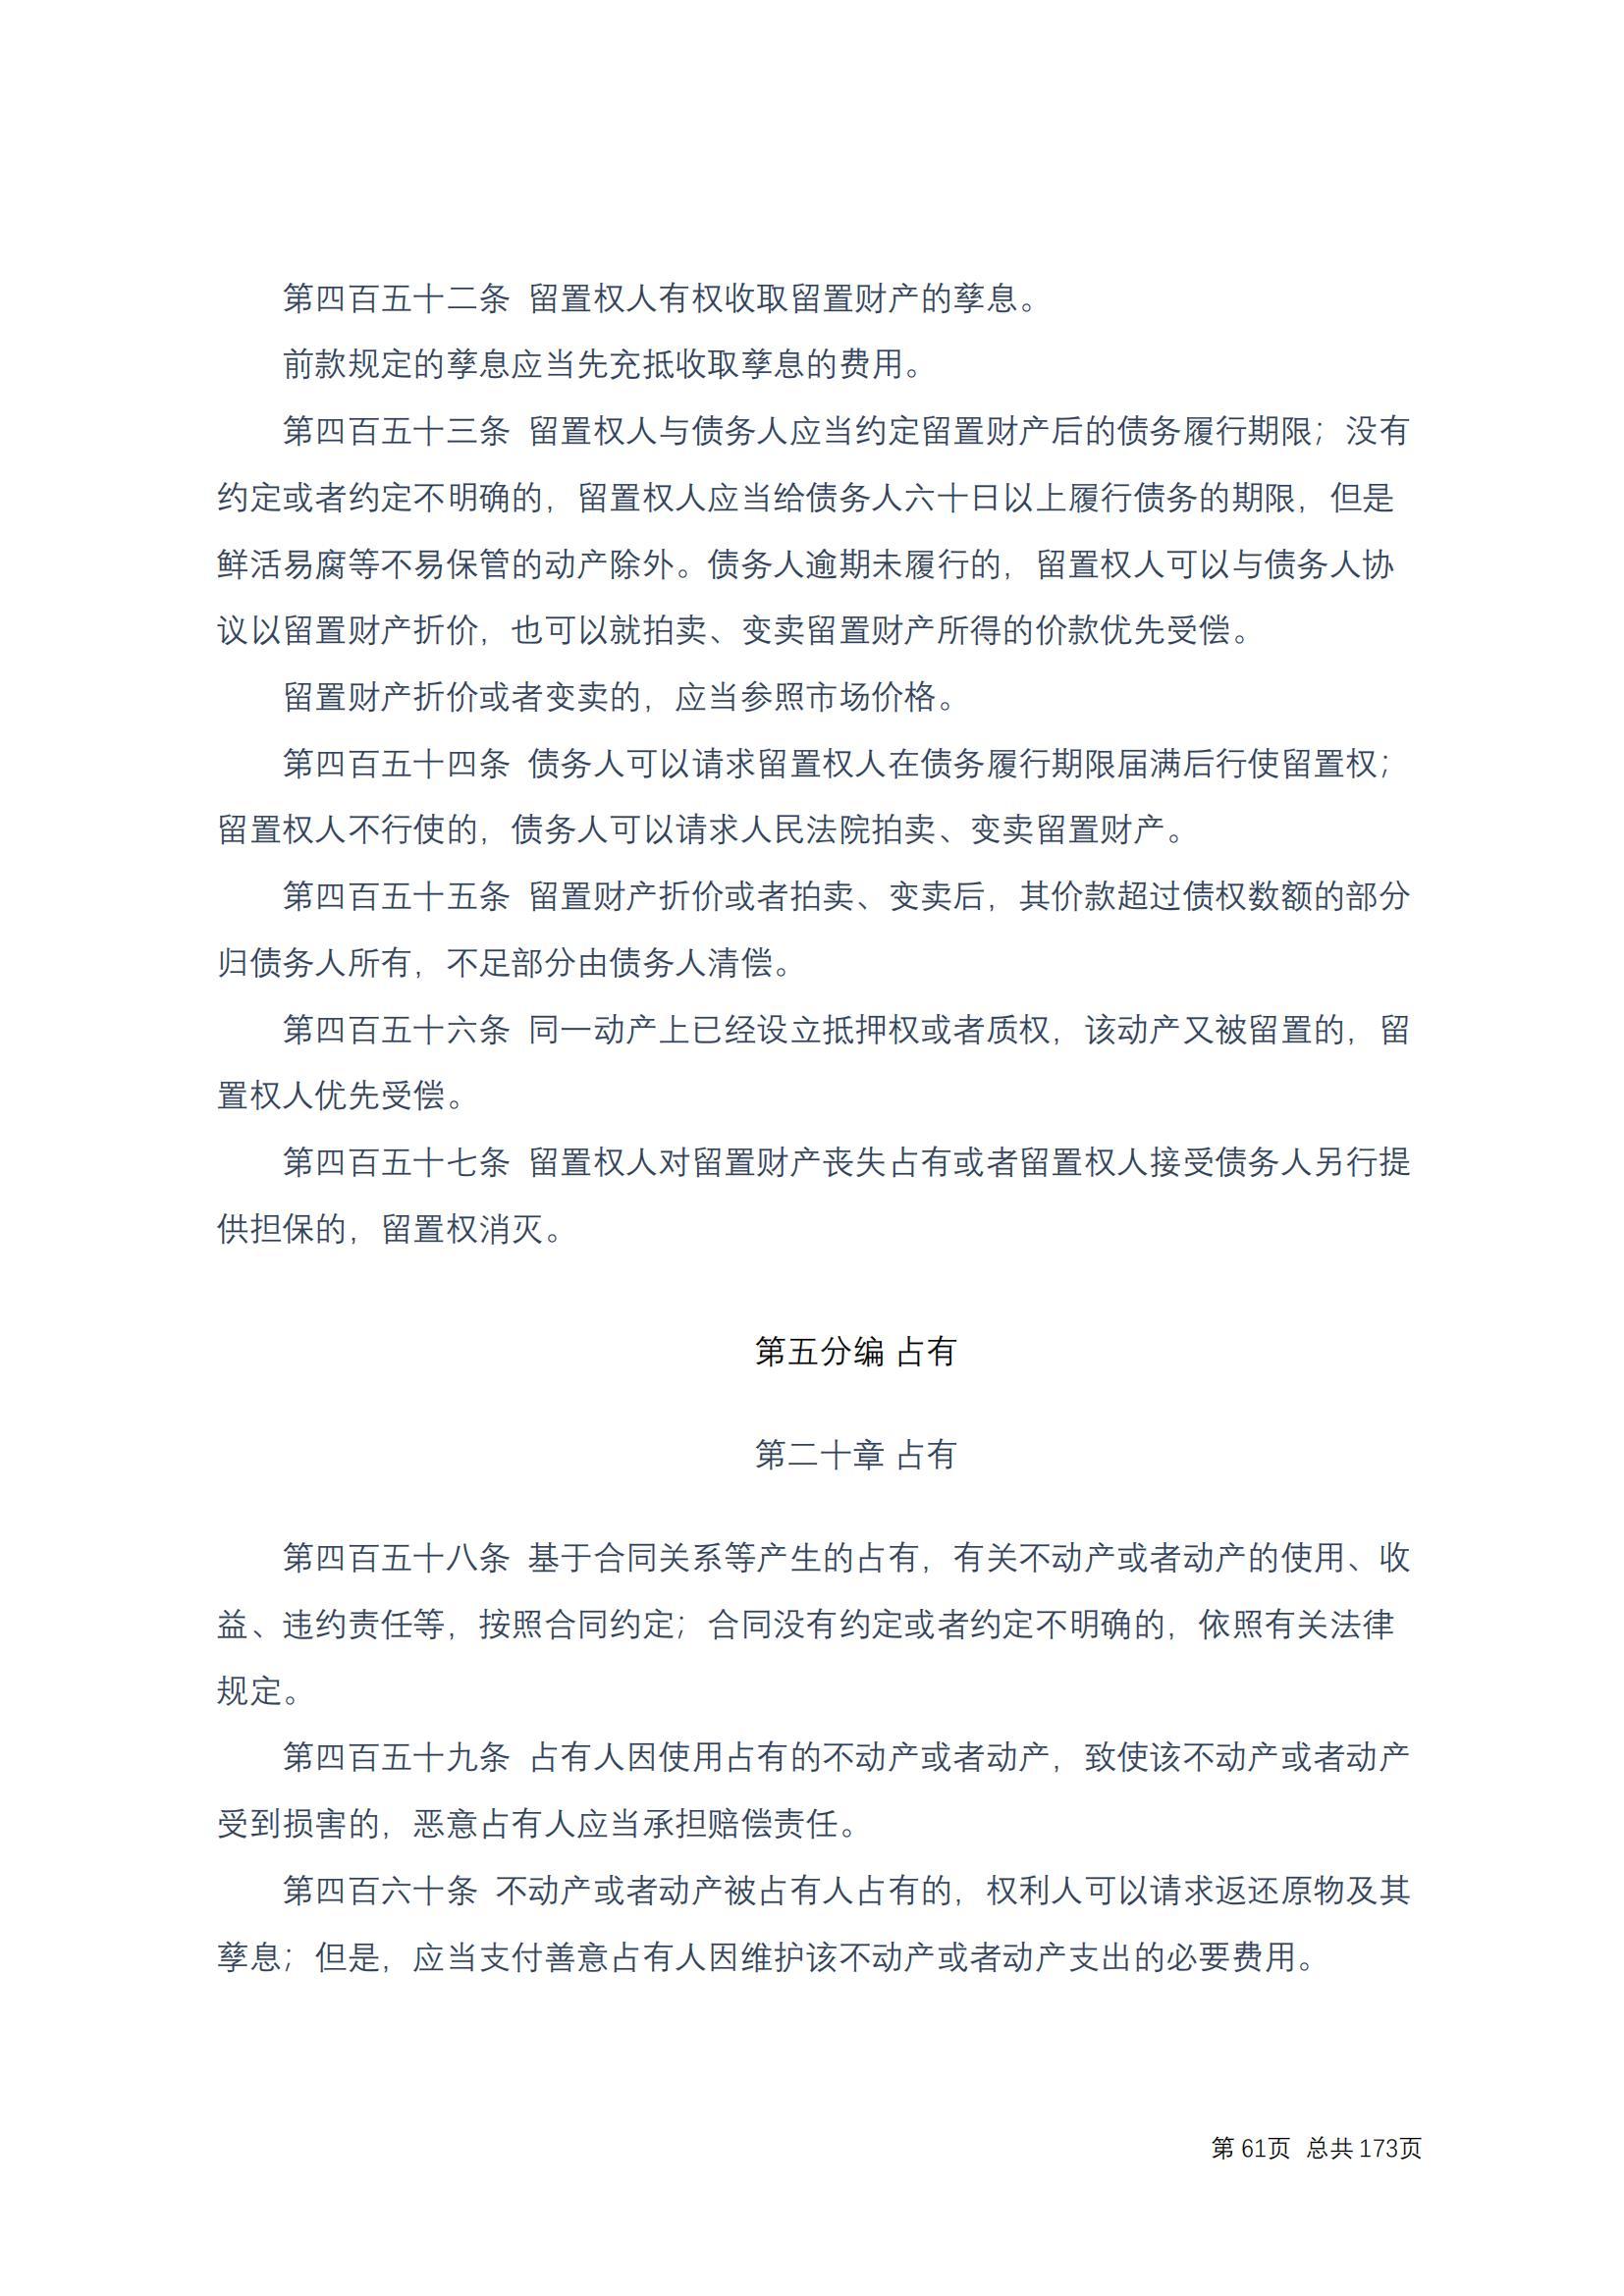 中华人民共和国民法典 修改过_60